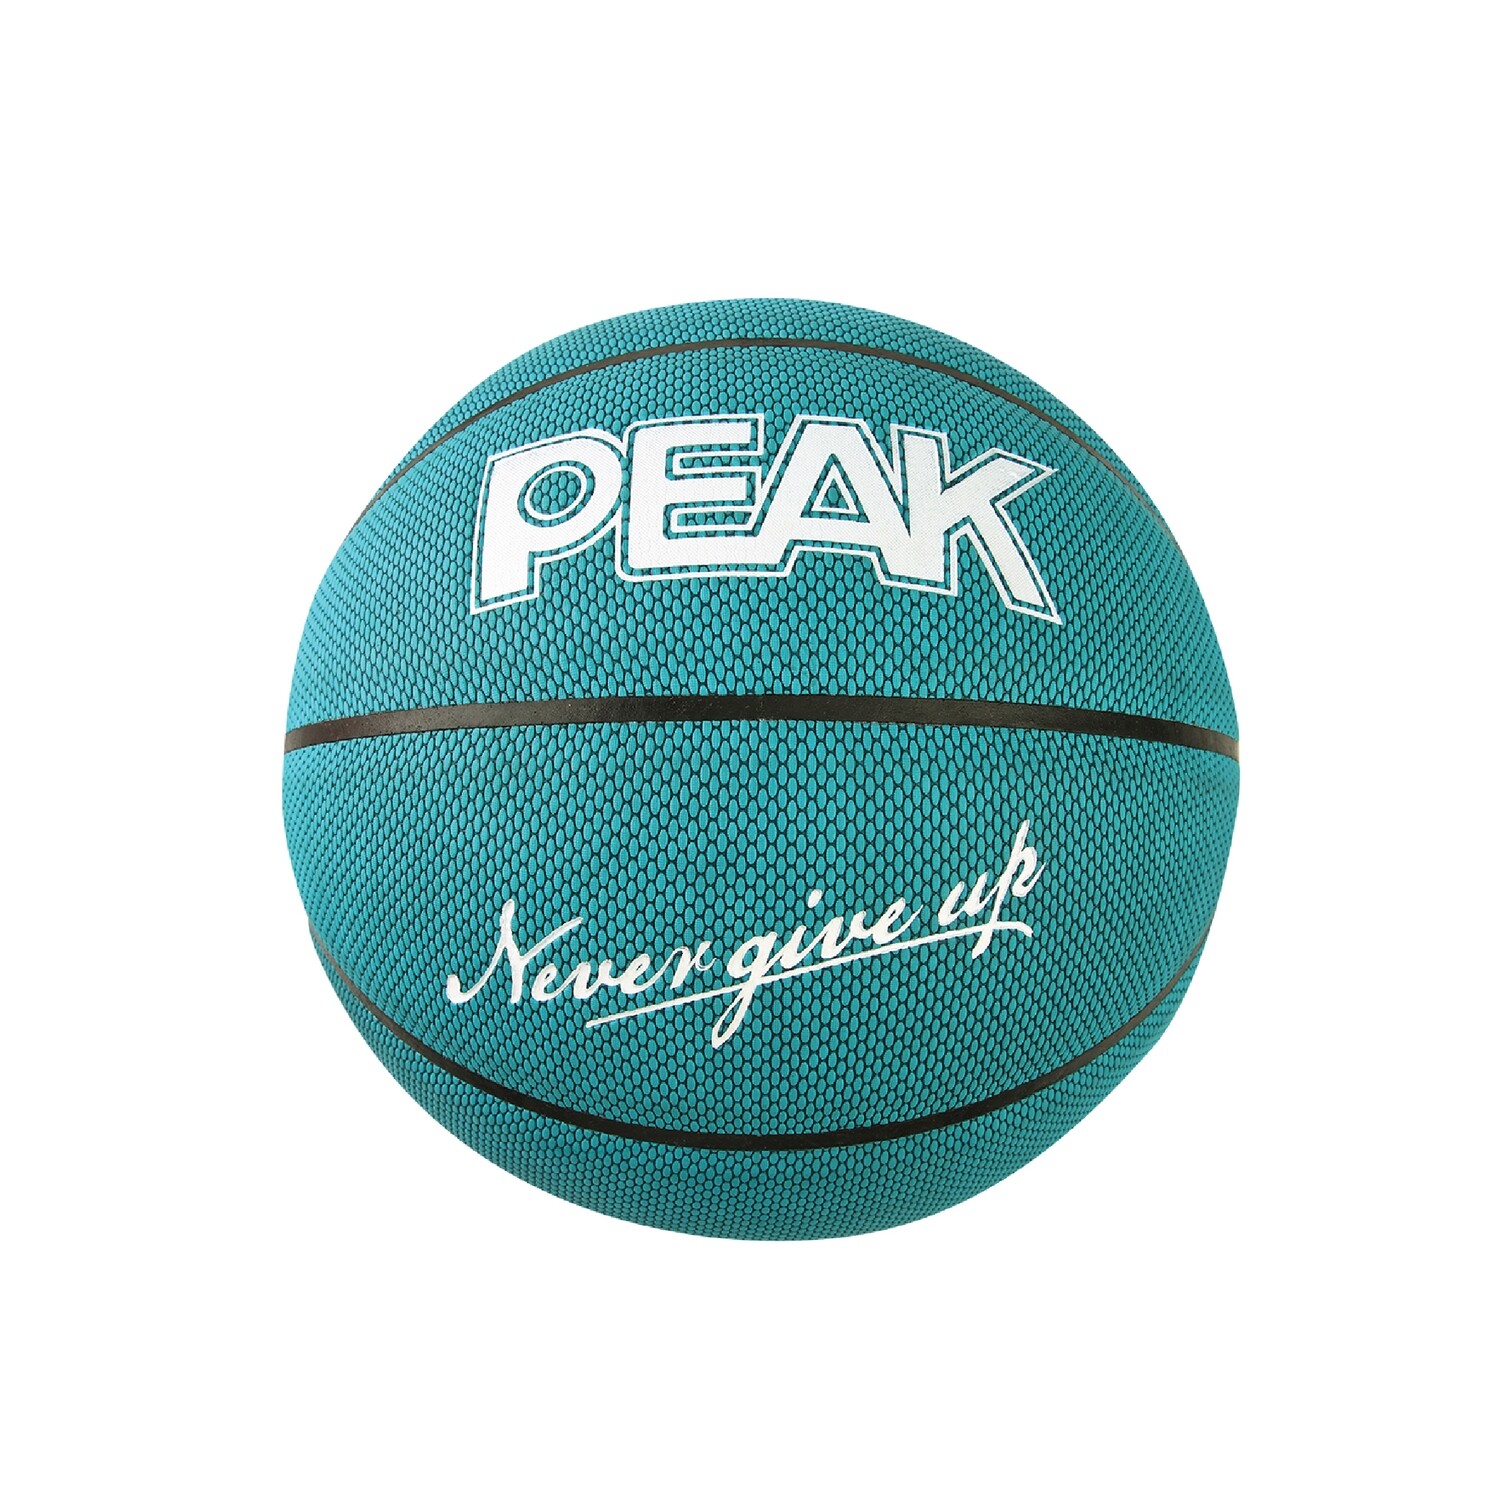 PEAK Moisture Absorption Basketball - Turbo Green